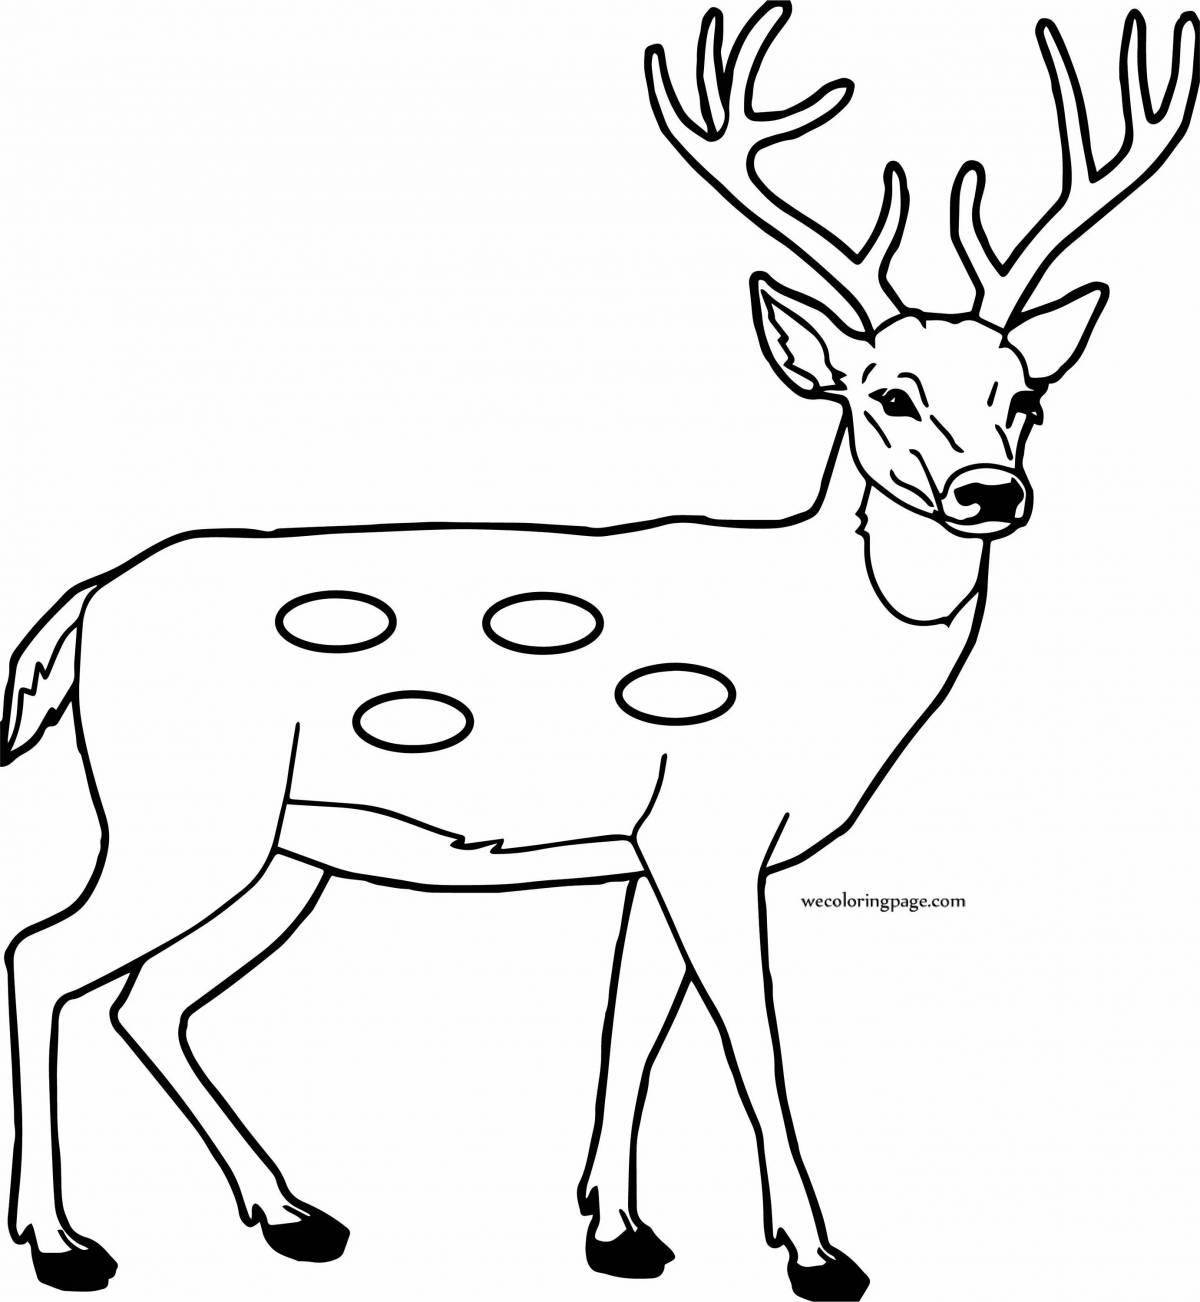 Naughty coloring deer